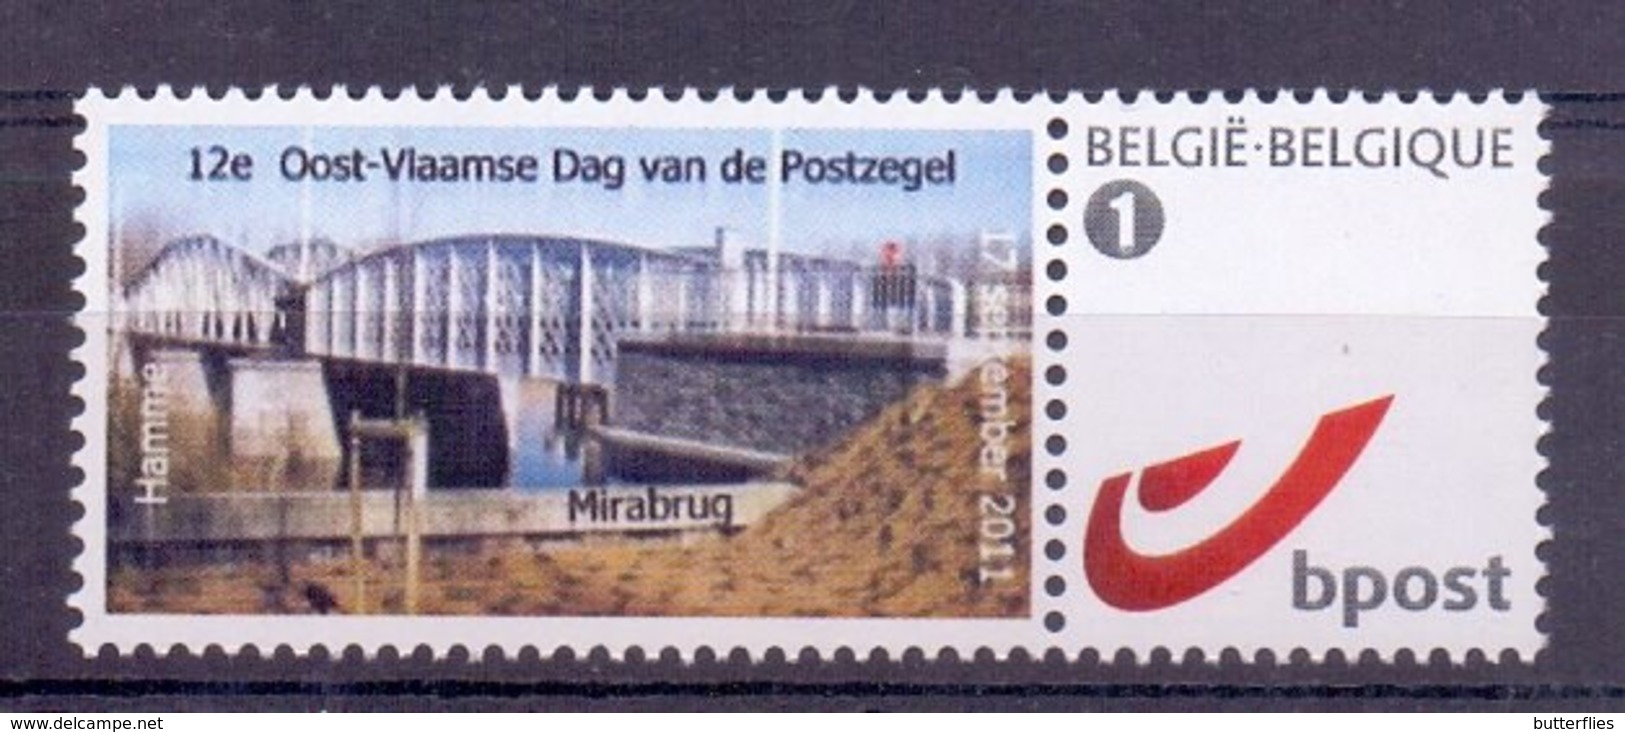 Belgie - 2011 - Duo Stamp - Hamme 2011 - 12e Oost-Vlaamse Dag Van De Postzegel - Mirabrug - Ungebraucht